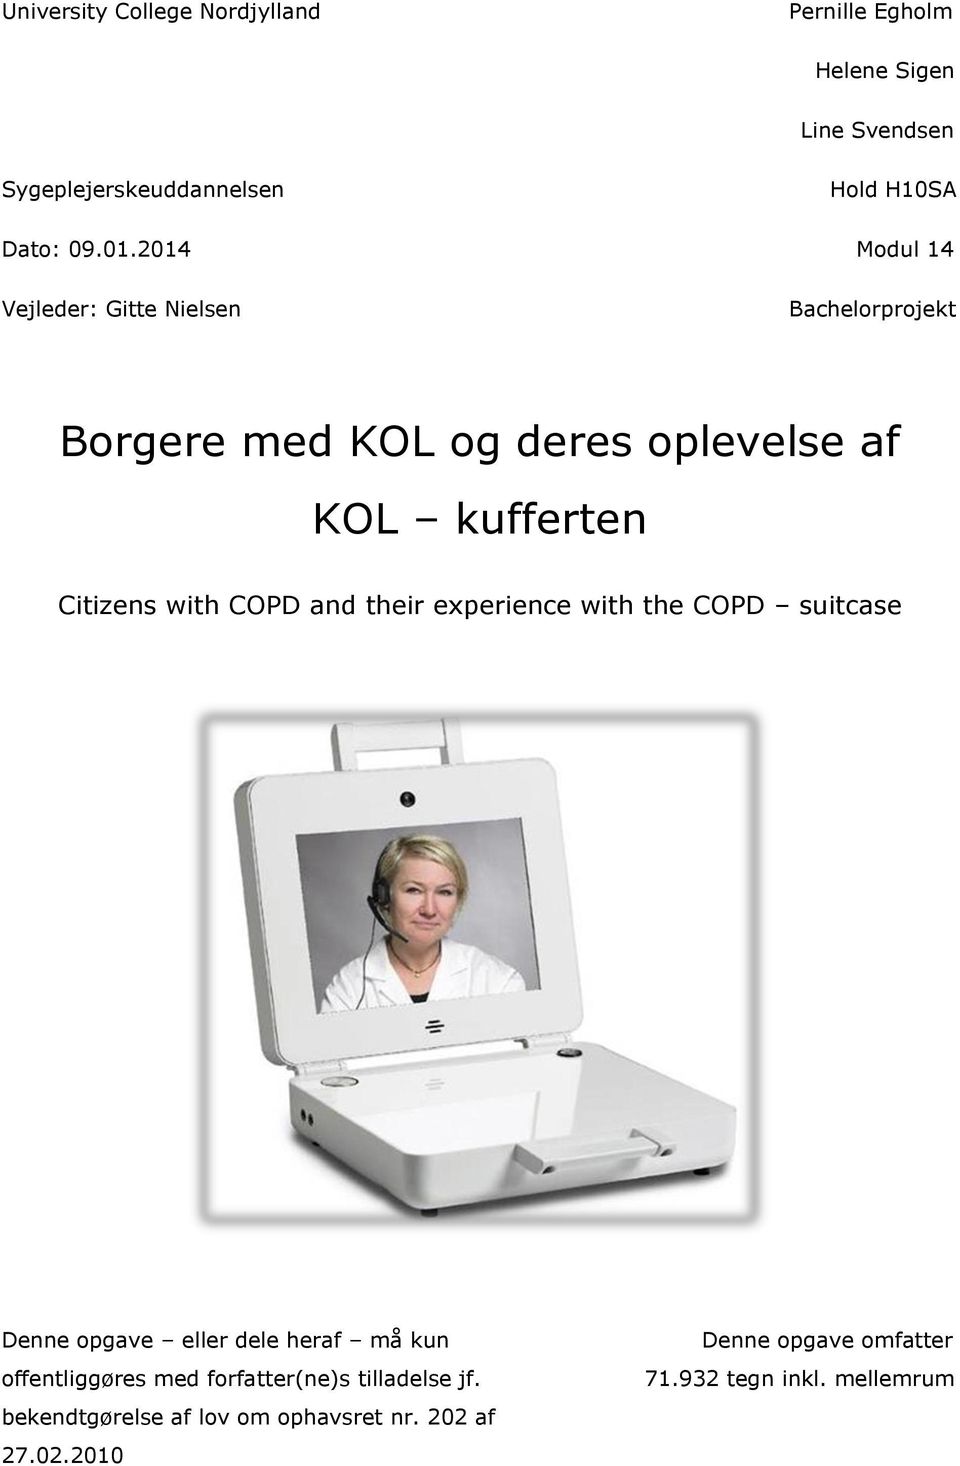 Borgere med KOL og deres oplevelse af KOL kufferten - PDF Gratis download